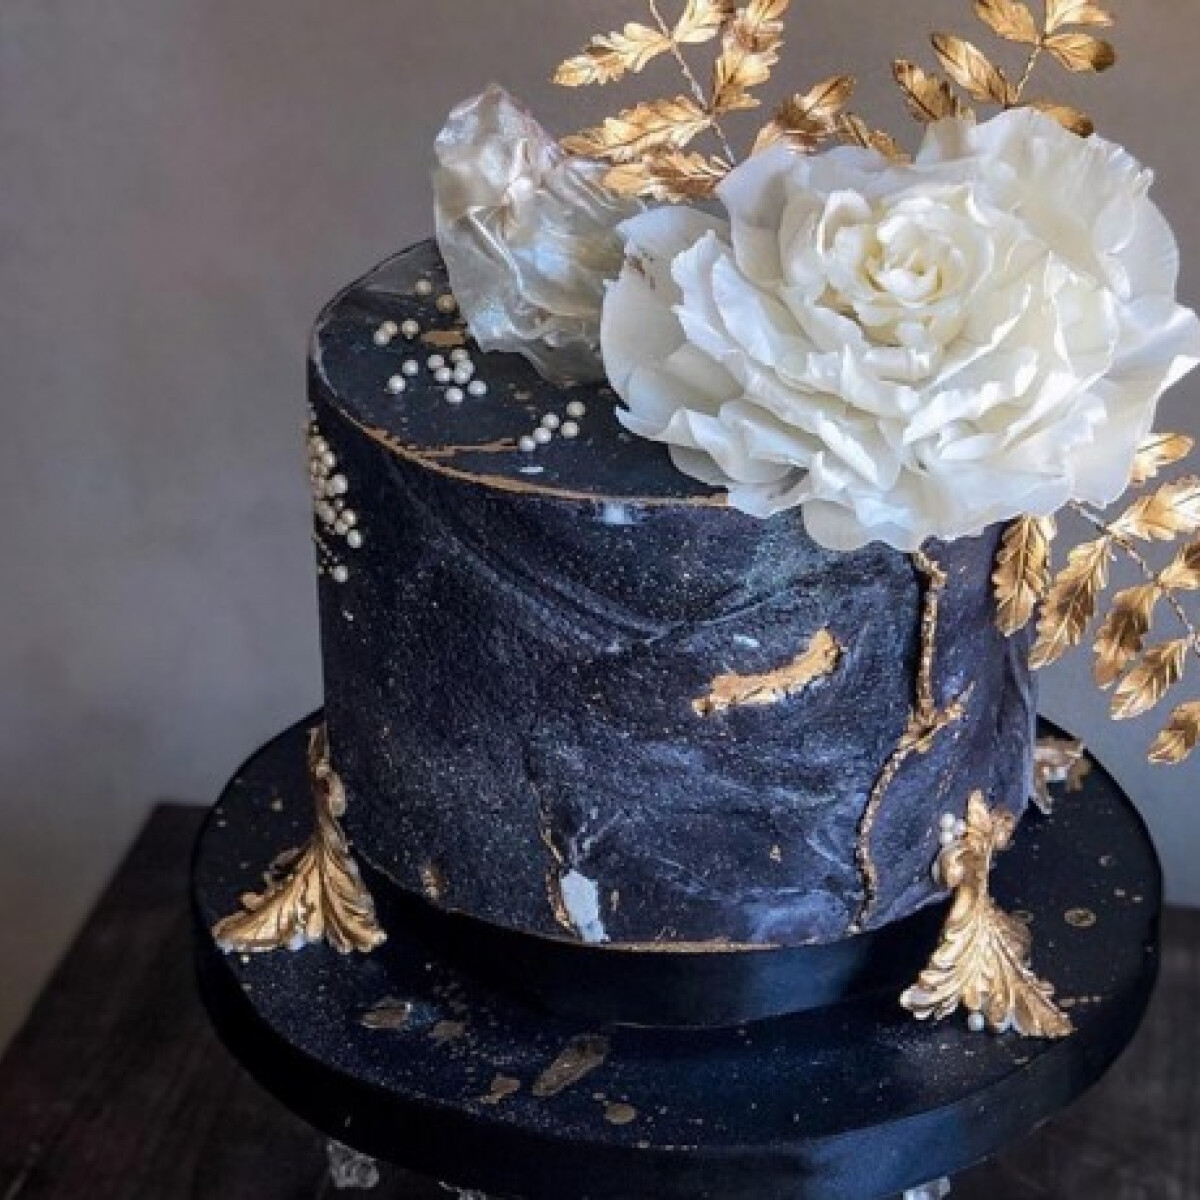 Ezek az idei szezon legszebb és legkülönlegesebb esküvői tortái - a fehér már a múlté!